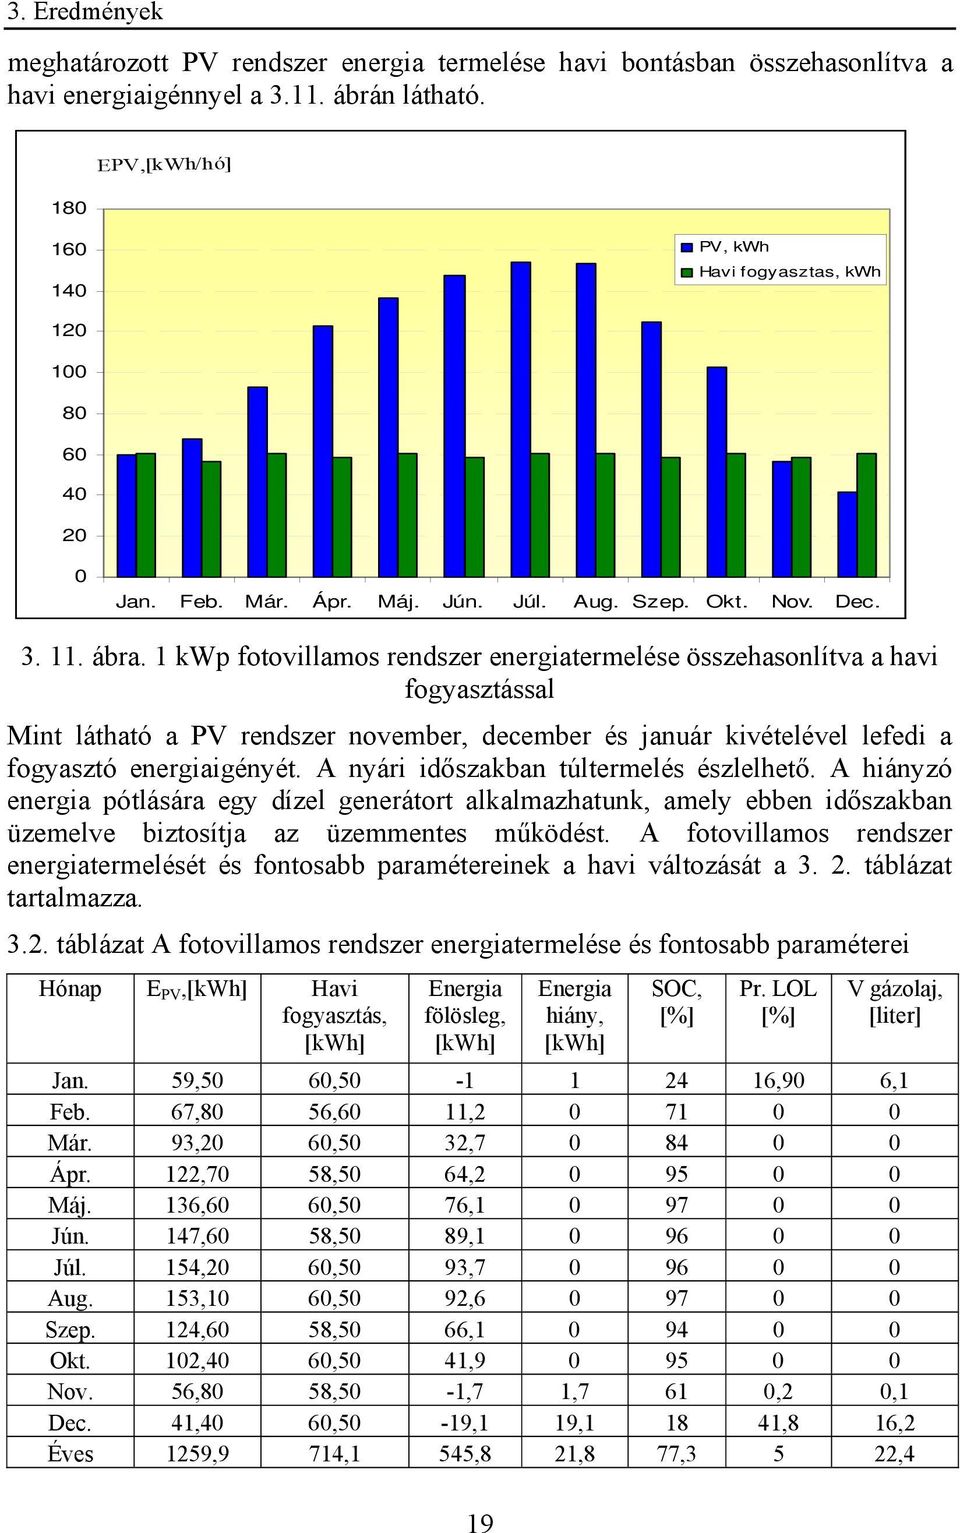 1 kwp fotovillamos rendszer energiatermelése összehasonlítva a havi fogyasztással Mint látható a PV rendszer november, december és január kivételével lefedi a fogyasztó energiaigényét.